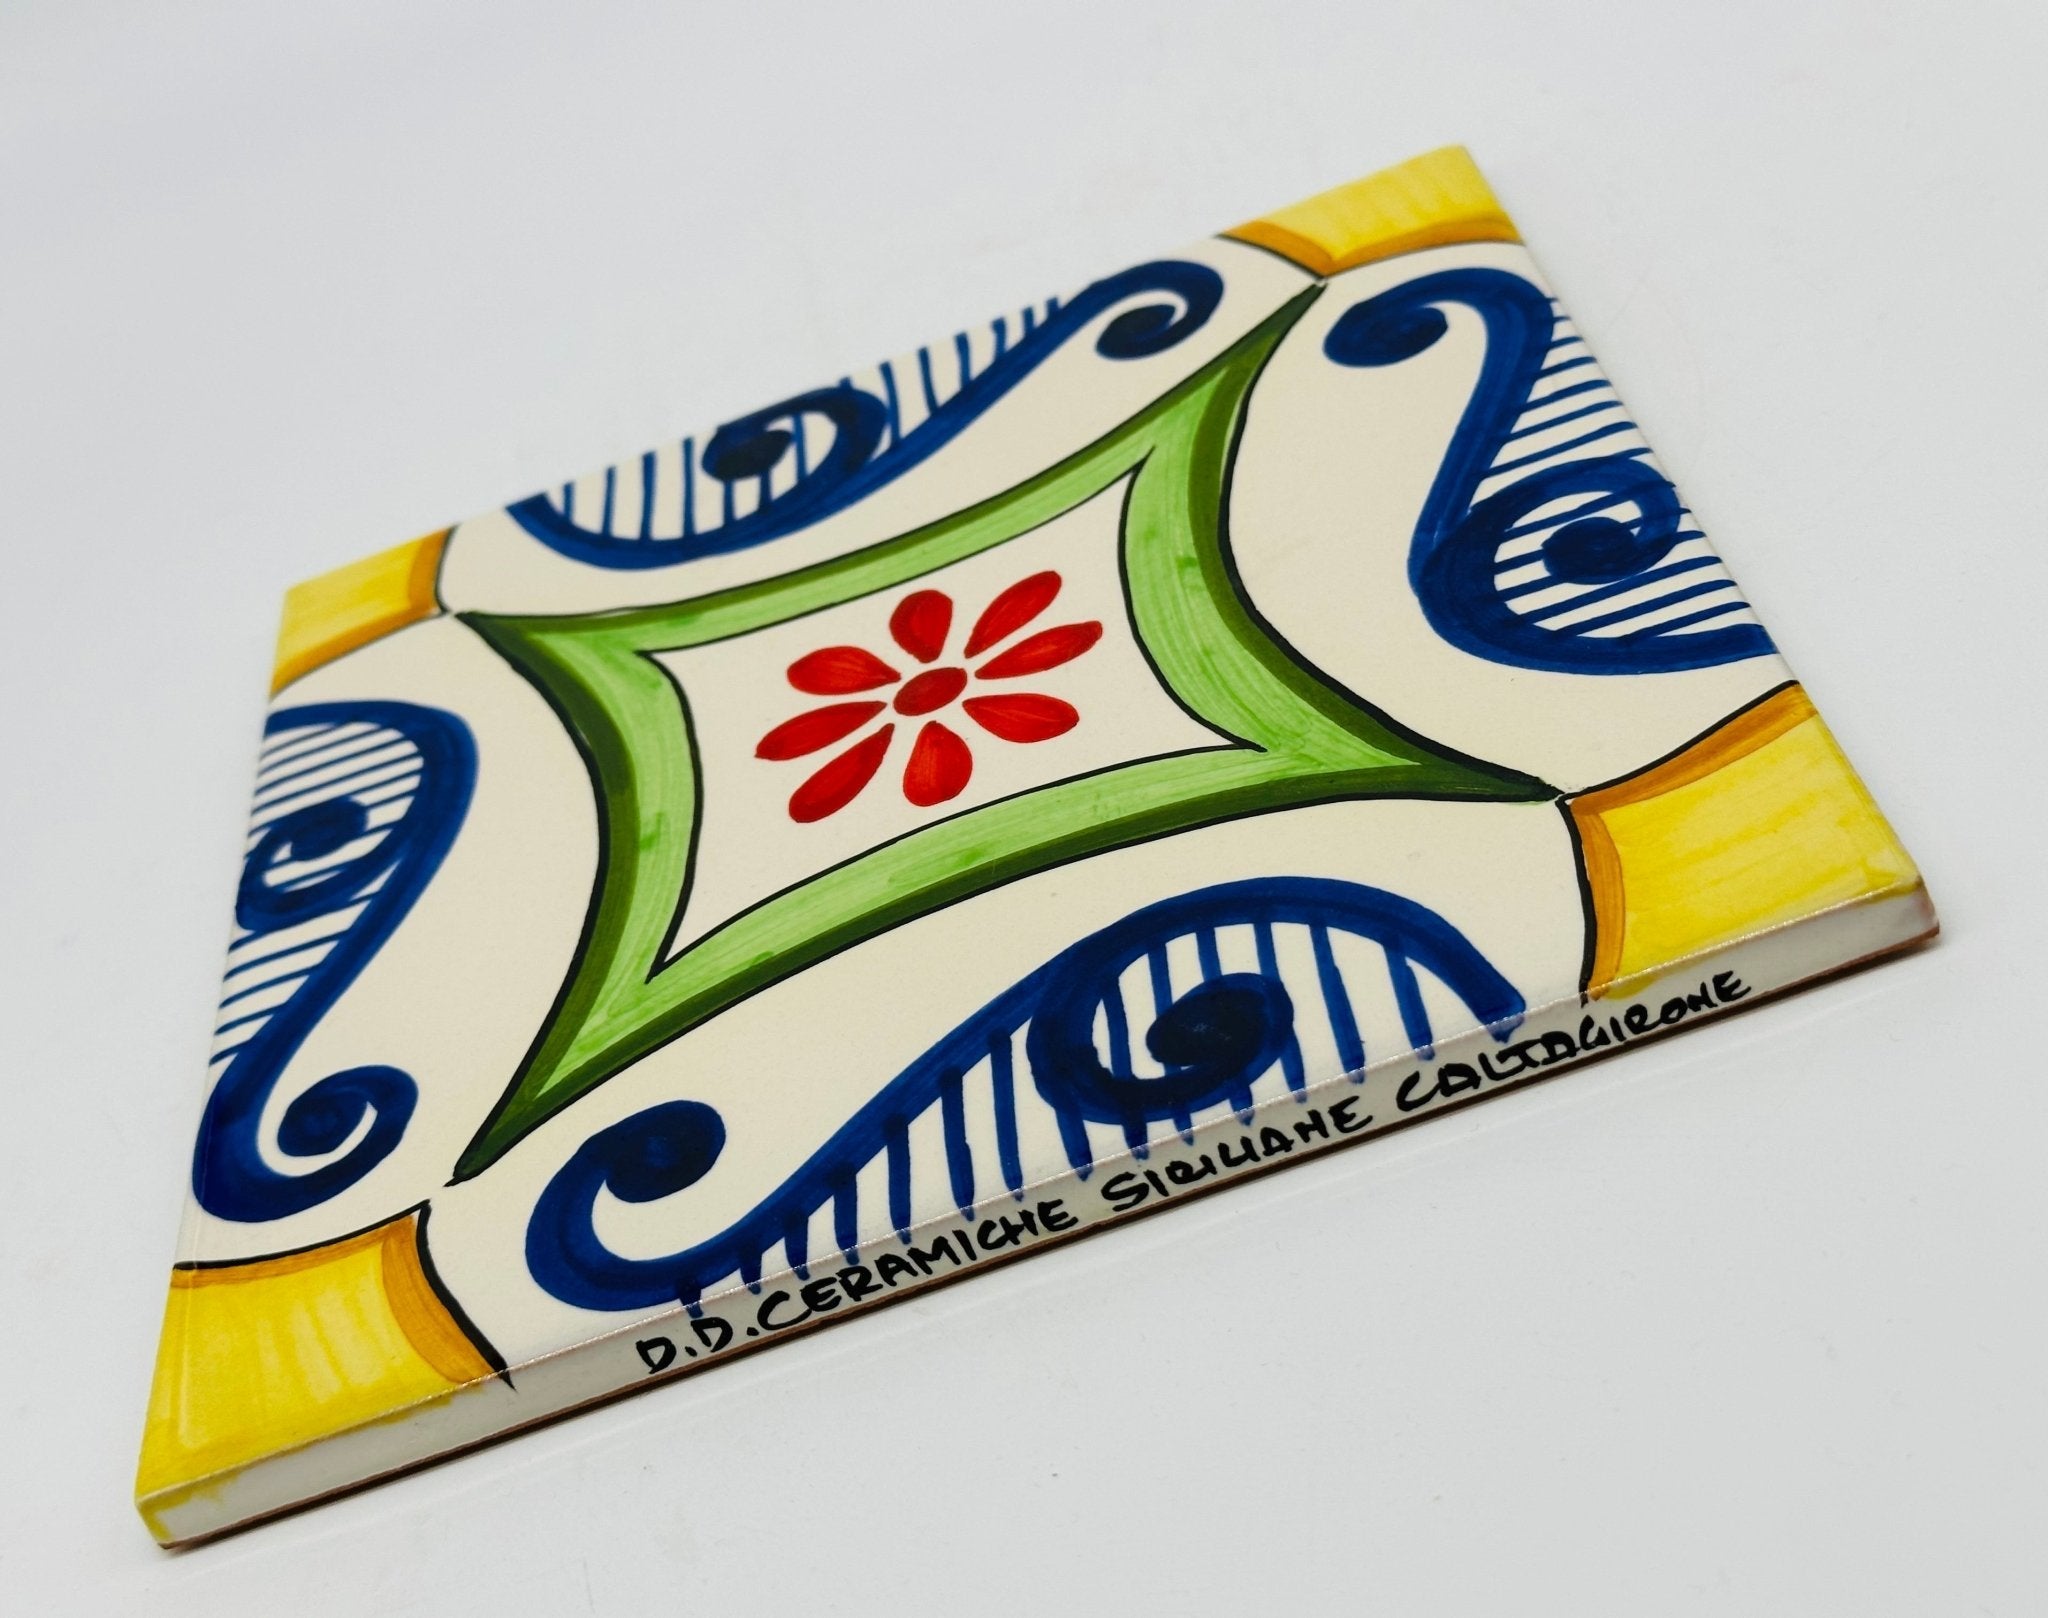 Maioliche Ceramica Caltagirone cm 20x20 Piastrelle Mattonelle decorate a mano - DD CERAMICHE SICILIANE